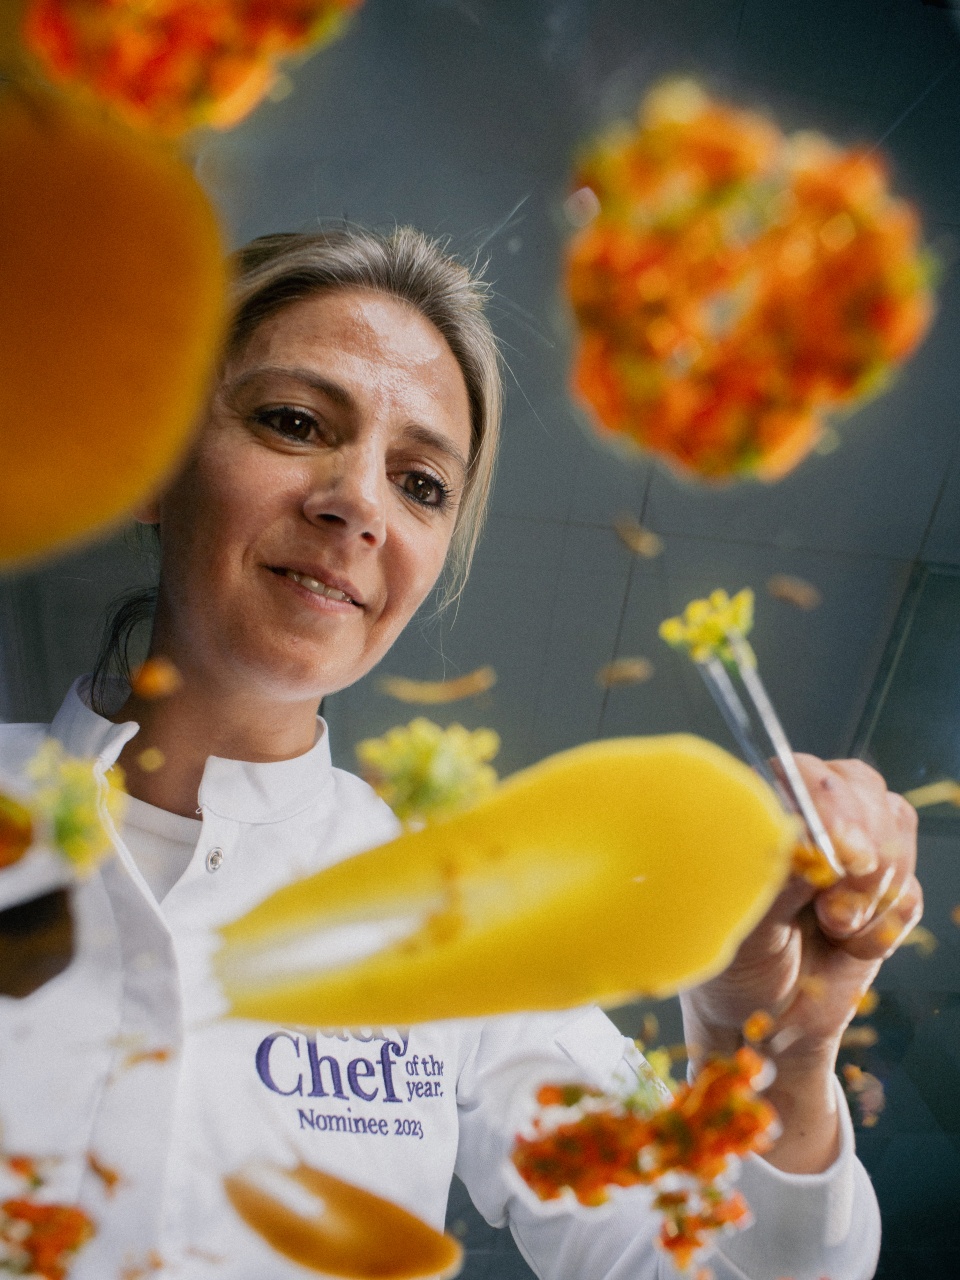 Een chef-kok die speels geel voedsel de lucht in gooit, met de tekst "Chef of the Year Nominee 2023" op haar jas